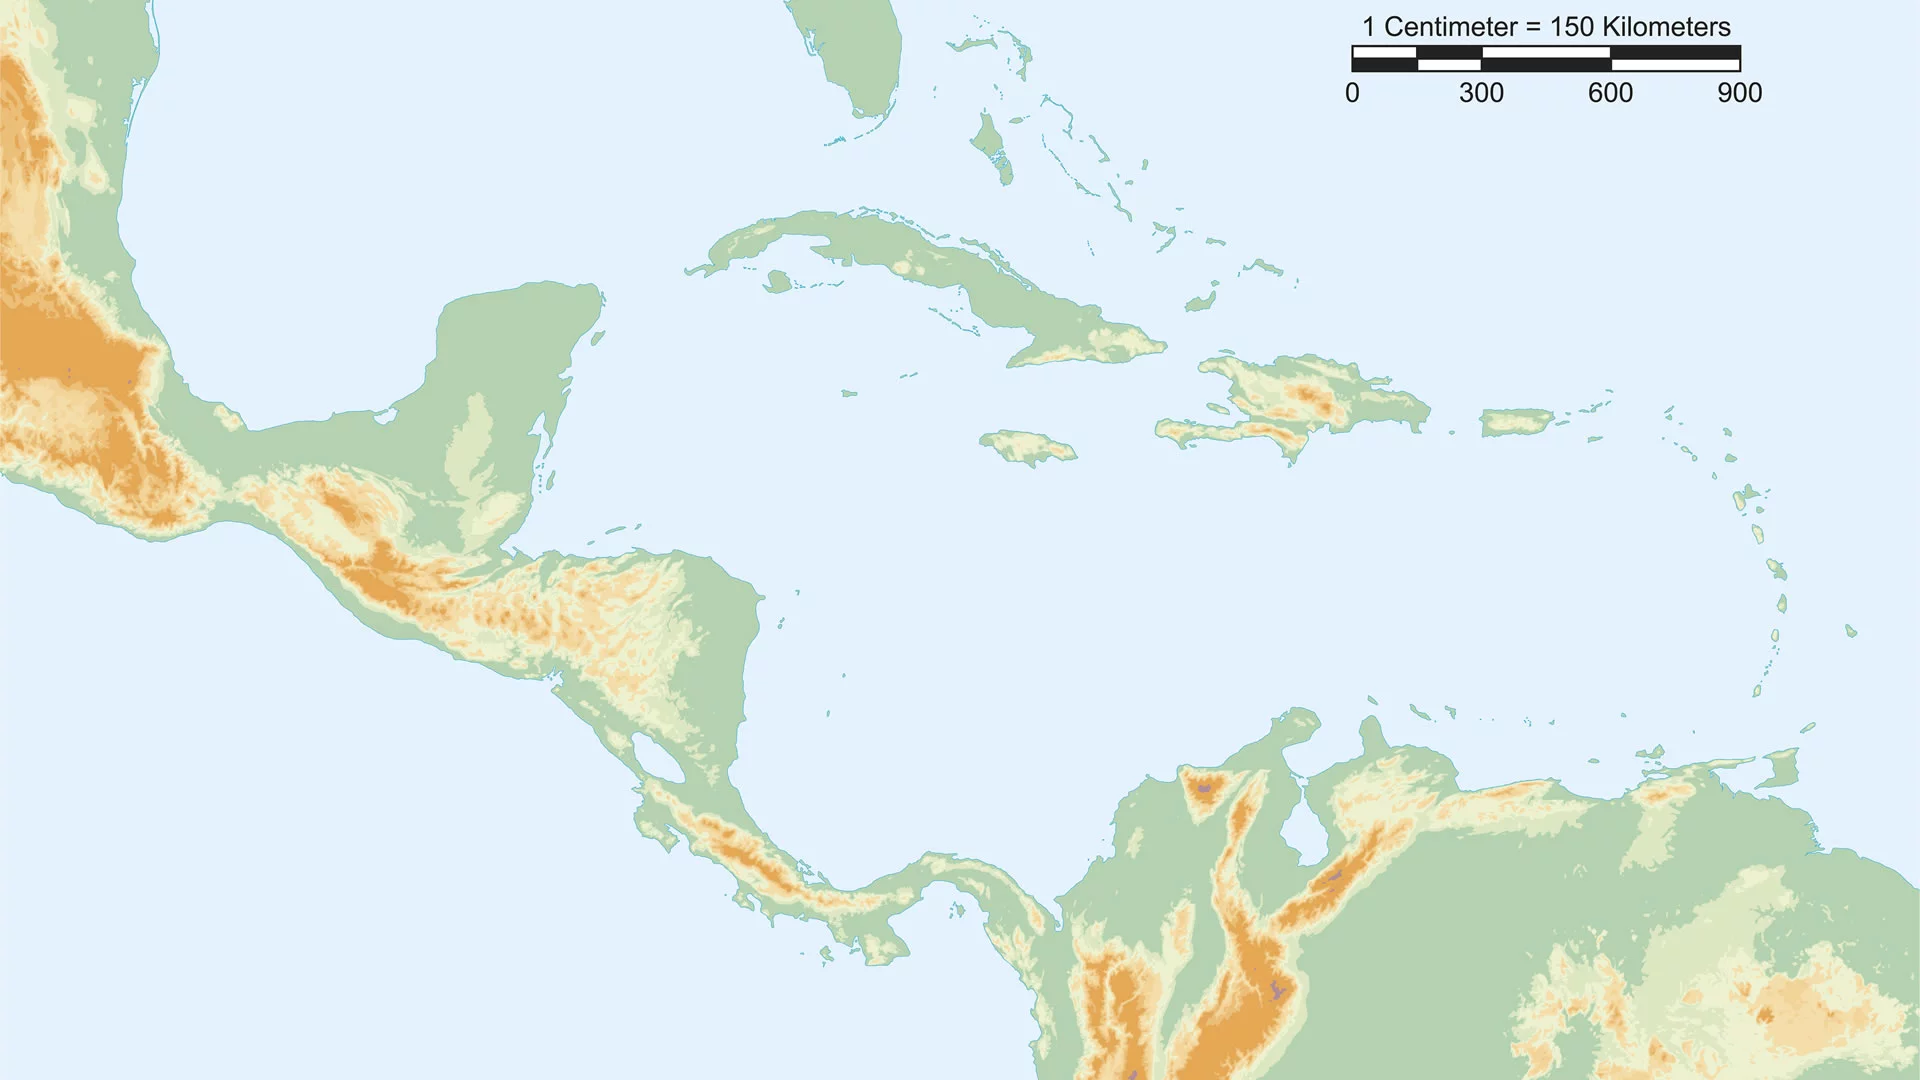 Mappa fisica dell'America centrale con scala